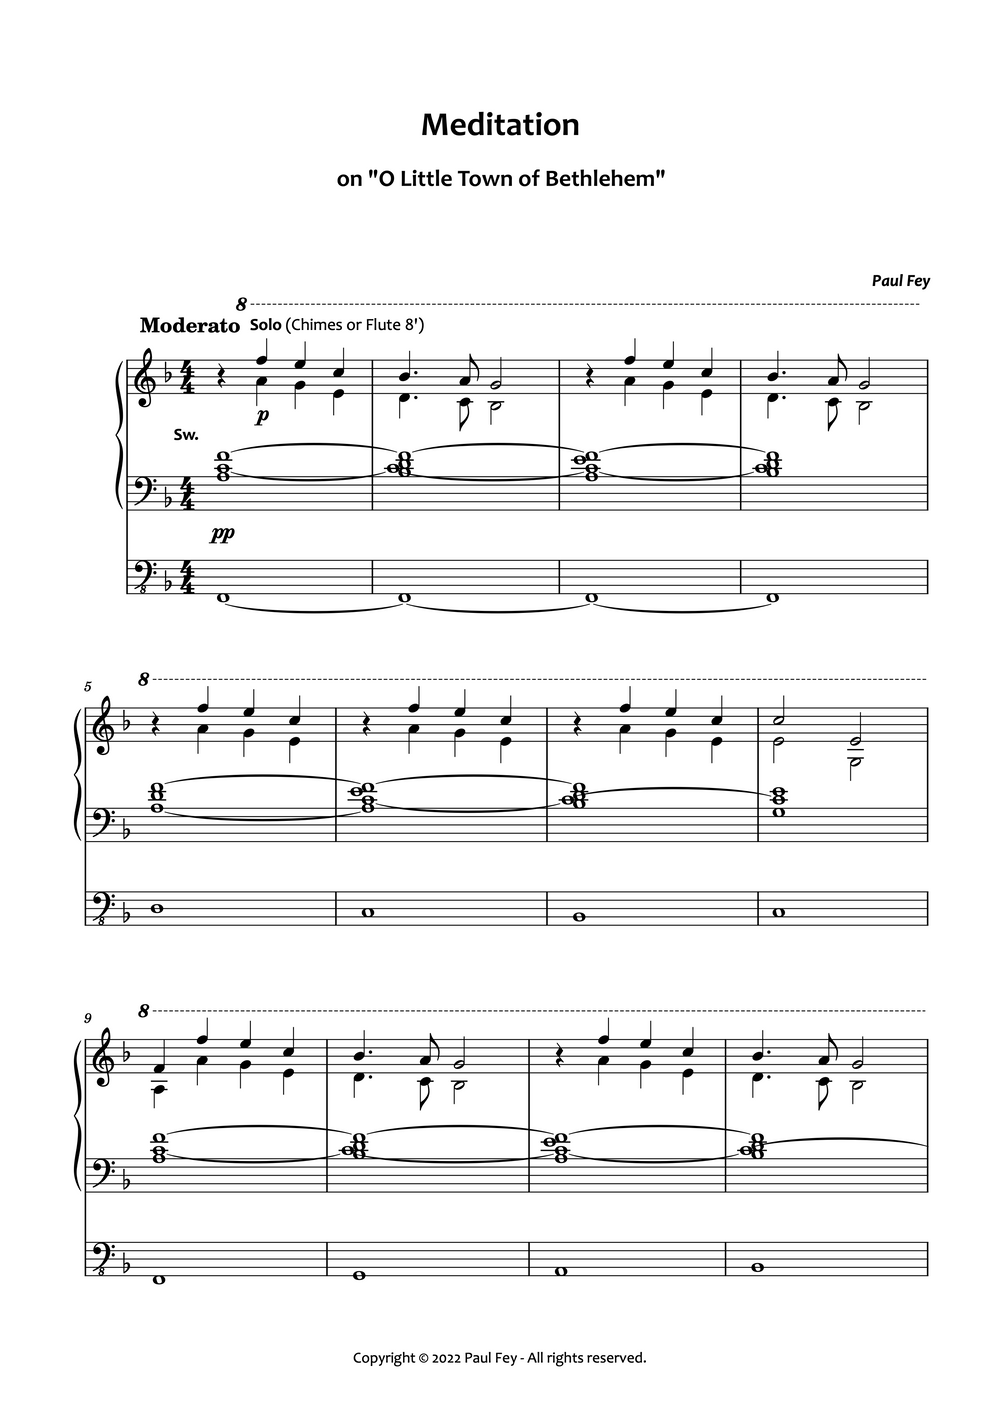 Meditation on "O Little Town of Bethlehem" (Sheet Music) - Music for Organ